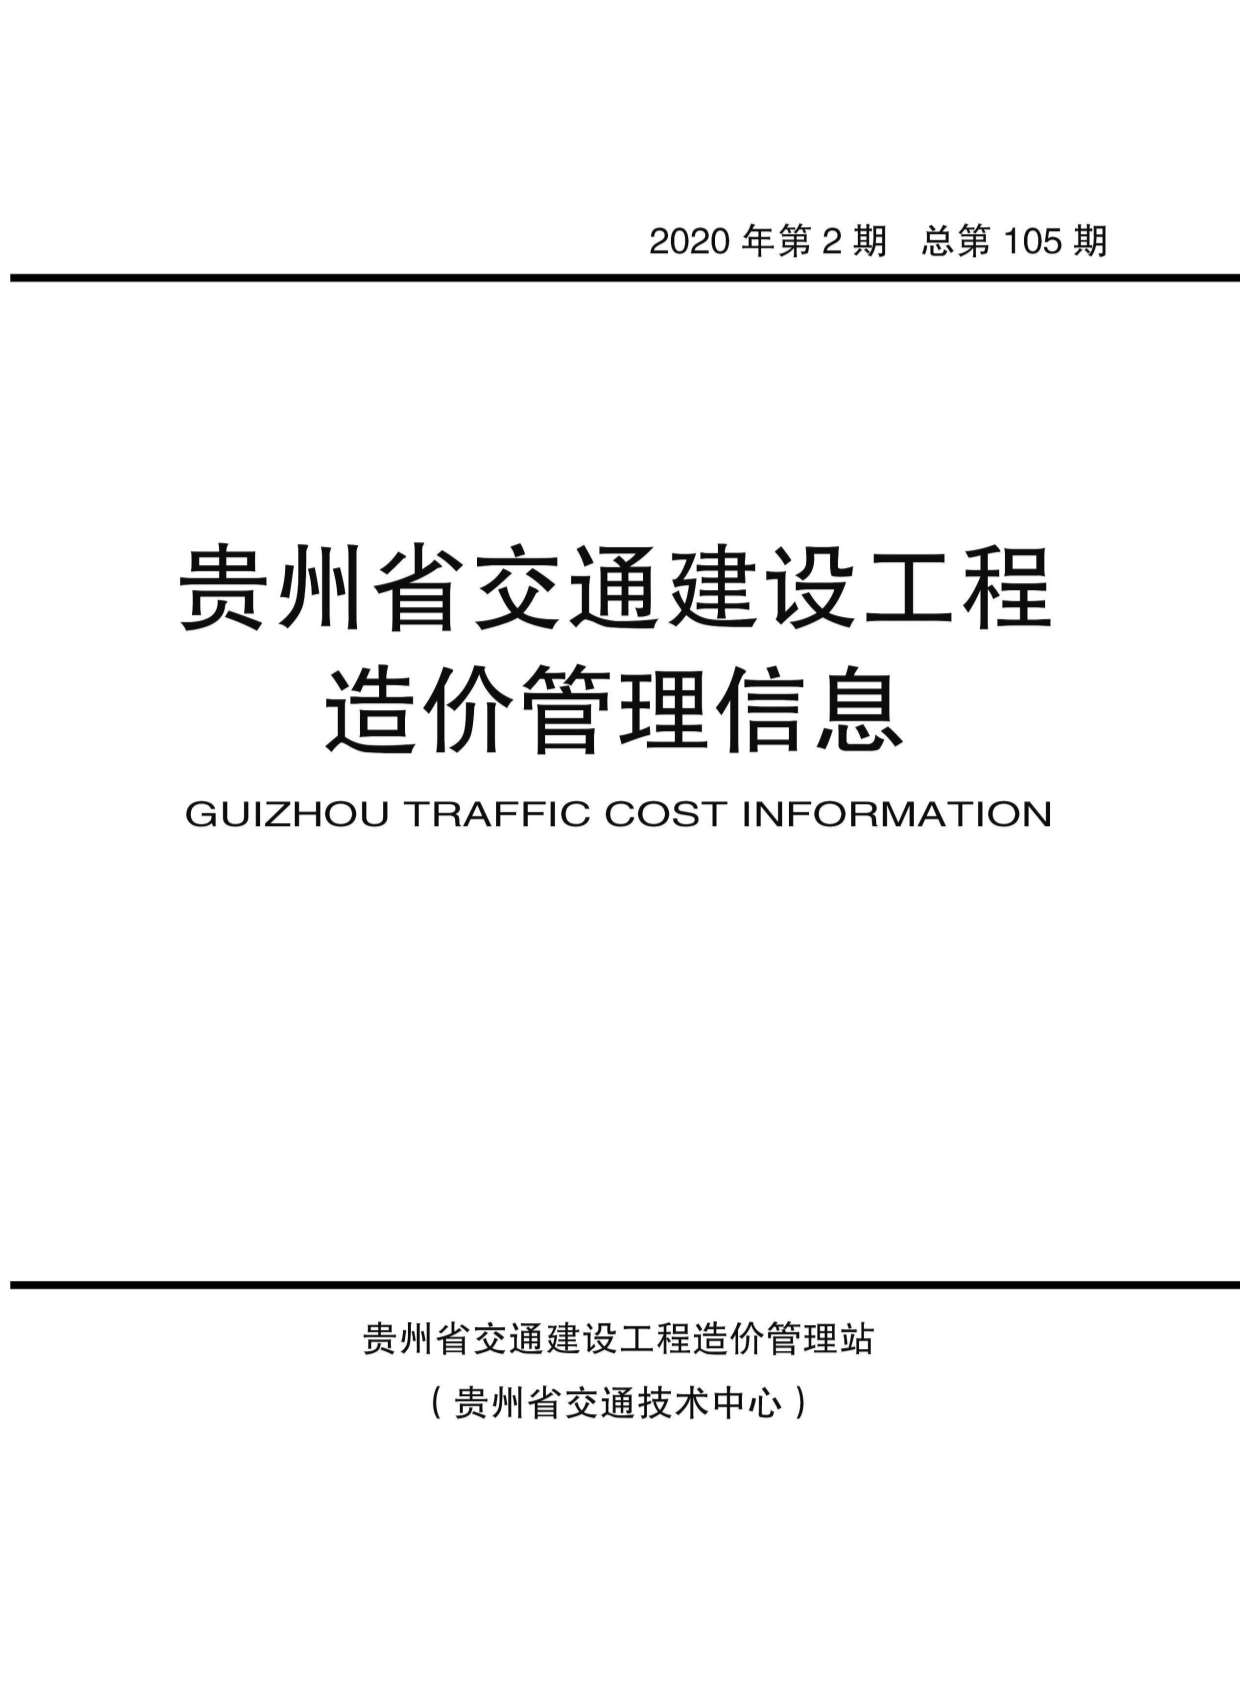 贵州省2020年2月工程信息价_贵州省信息价期刊PDF扫描件电子版